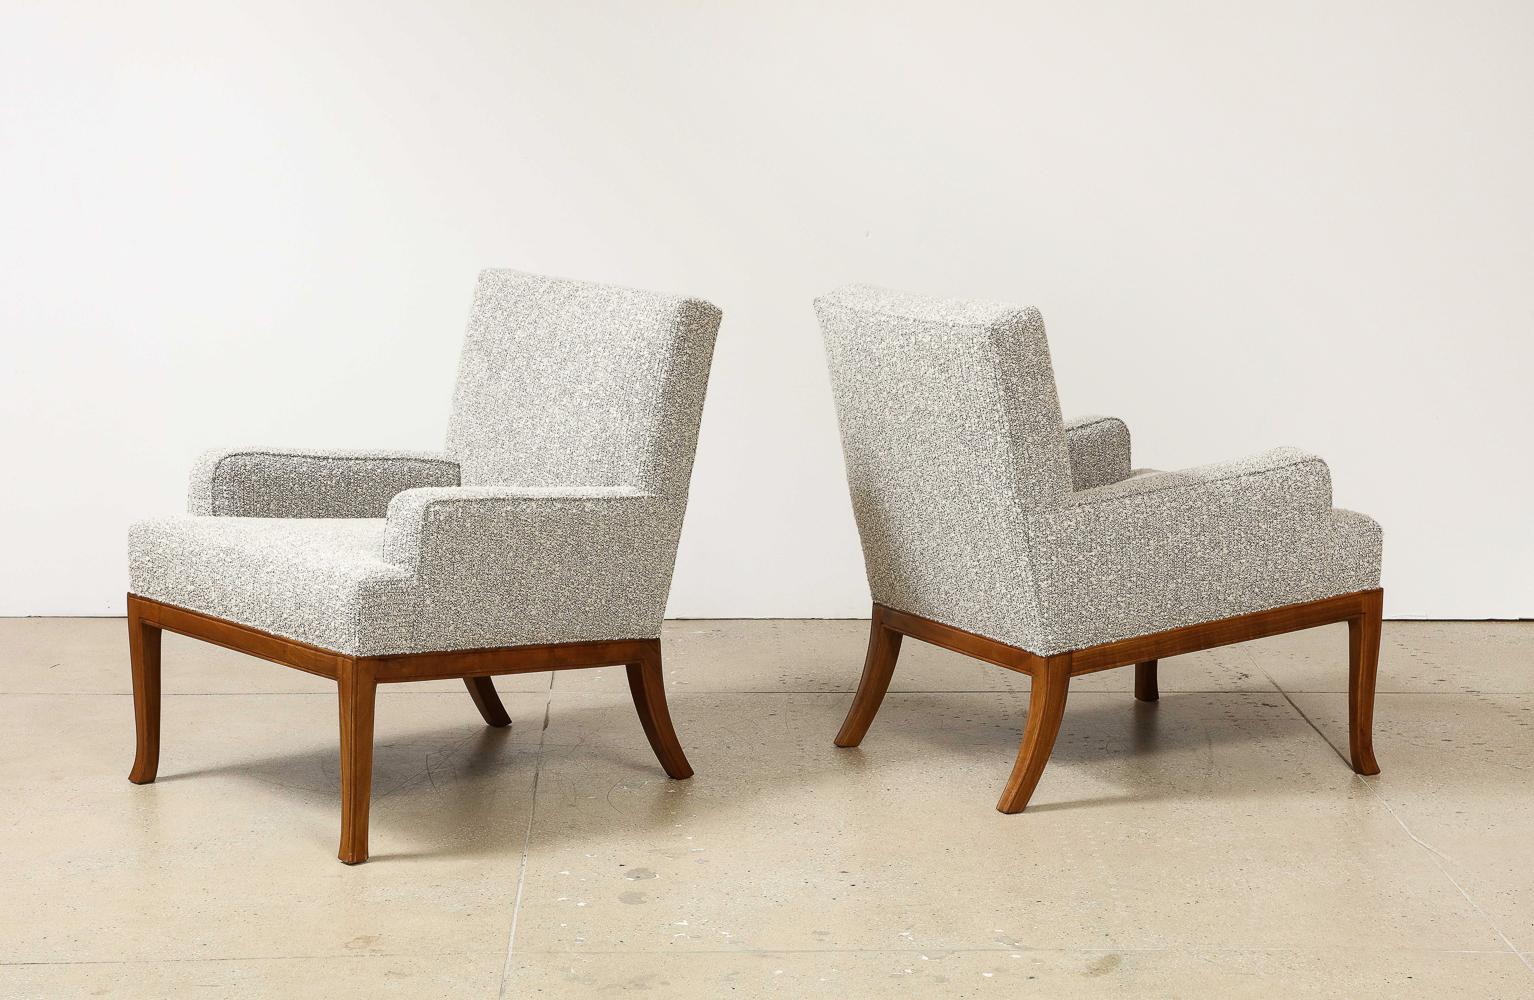 Nr. 102 Lounge Chairs von T. H. Robsjohn-Gibbings für Saridis.  Nussbaum mit Polsterung. Produziert von Saridis Furniture, Griechenland. Unmarkiert.